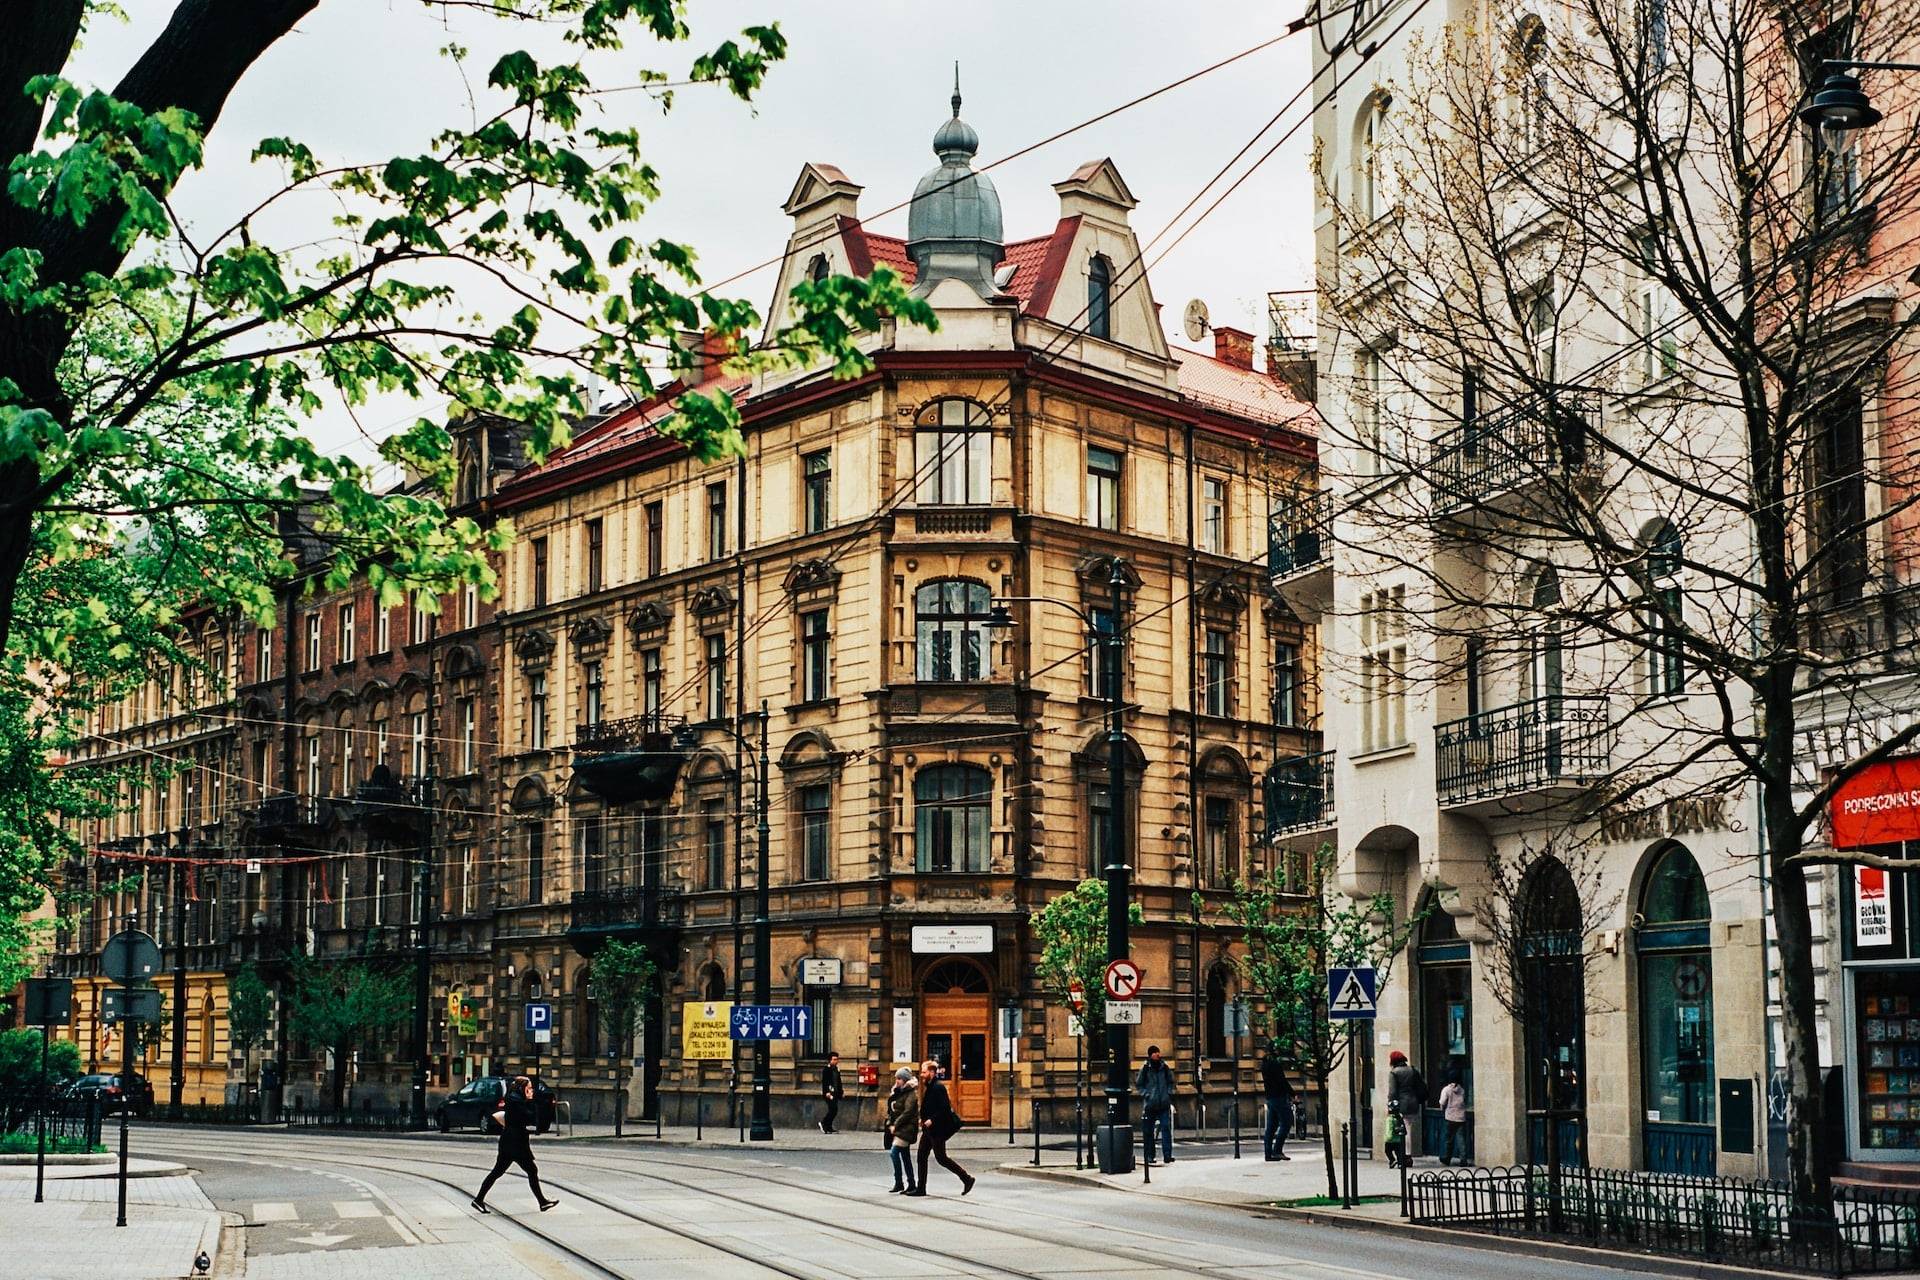 Tendencje rynku nieruchomości w Polsce: Perspektywy i wyzwania